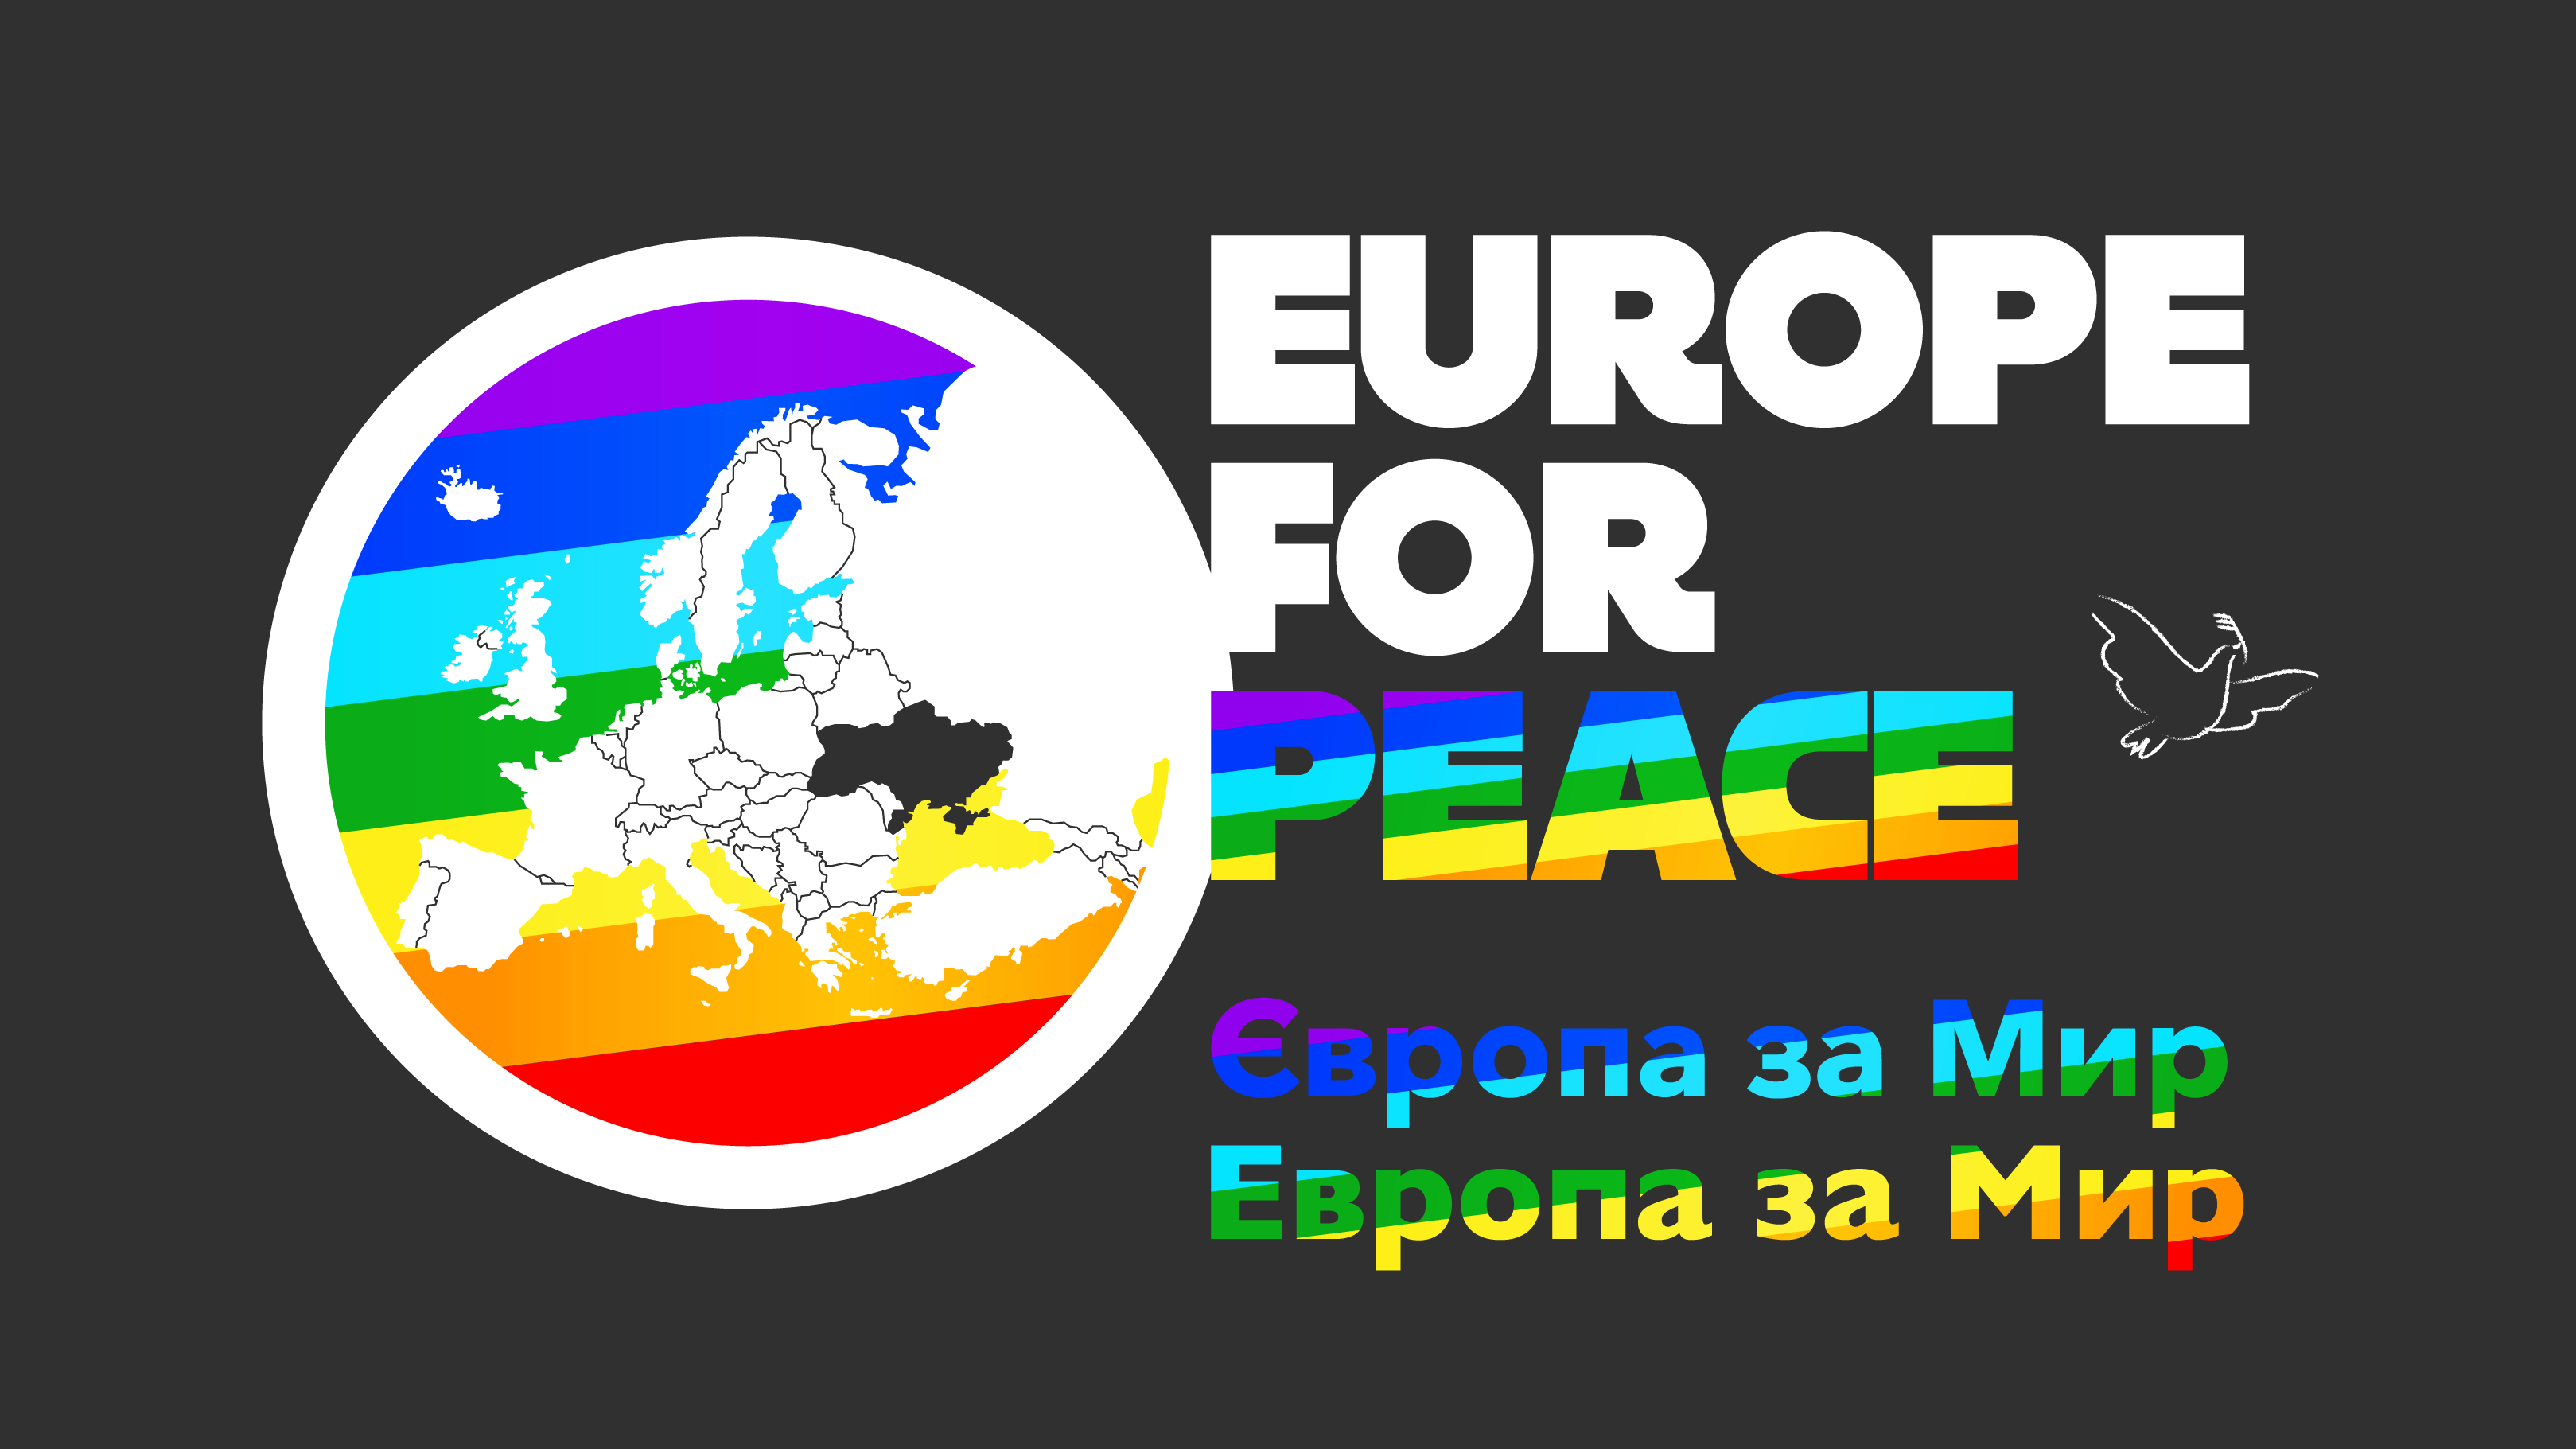 Europe for Peace in tutto il continente!